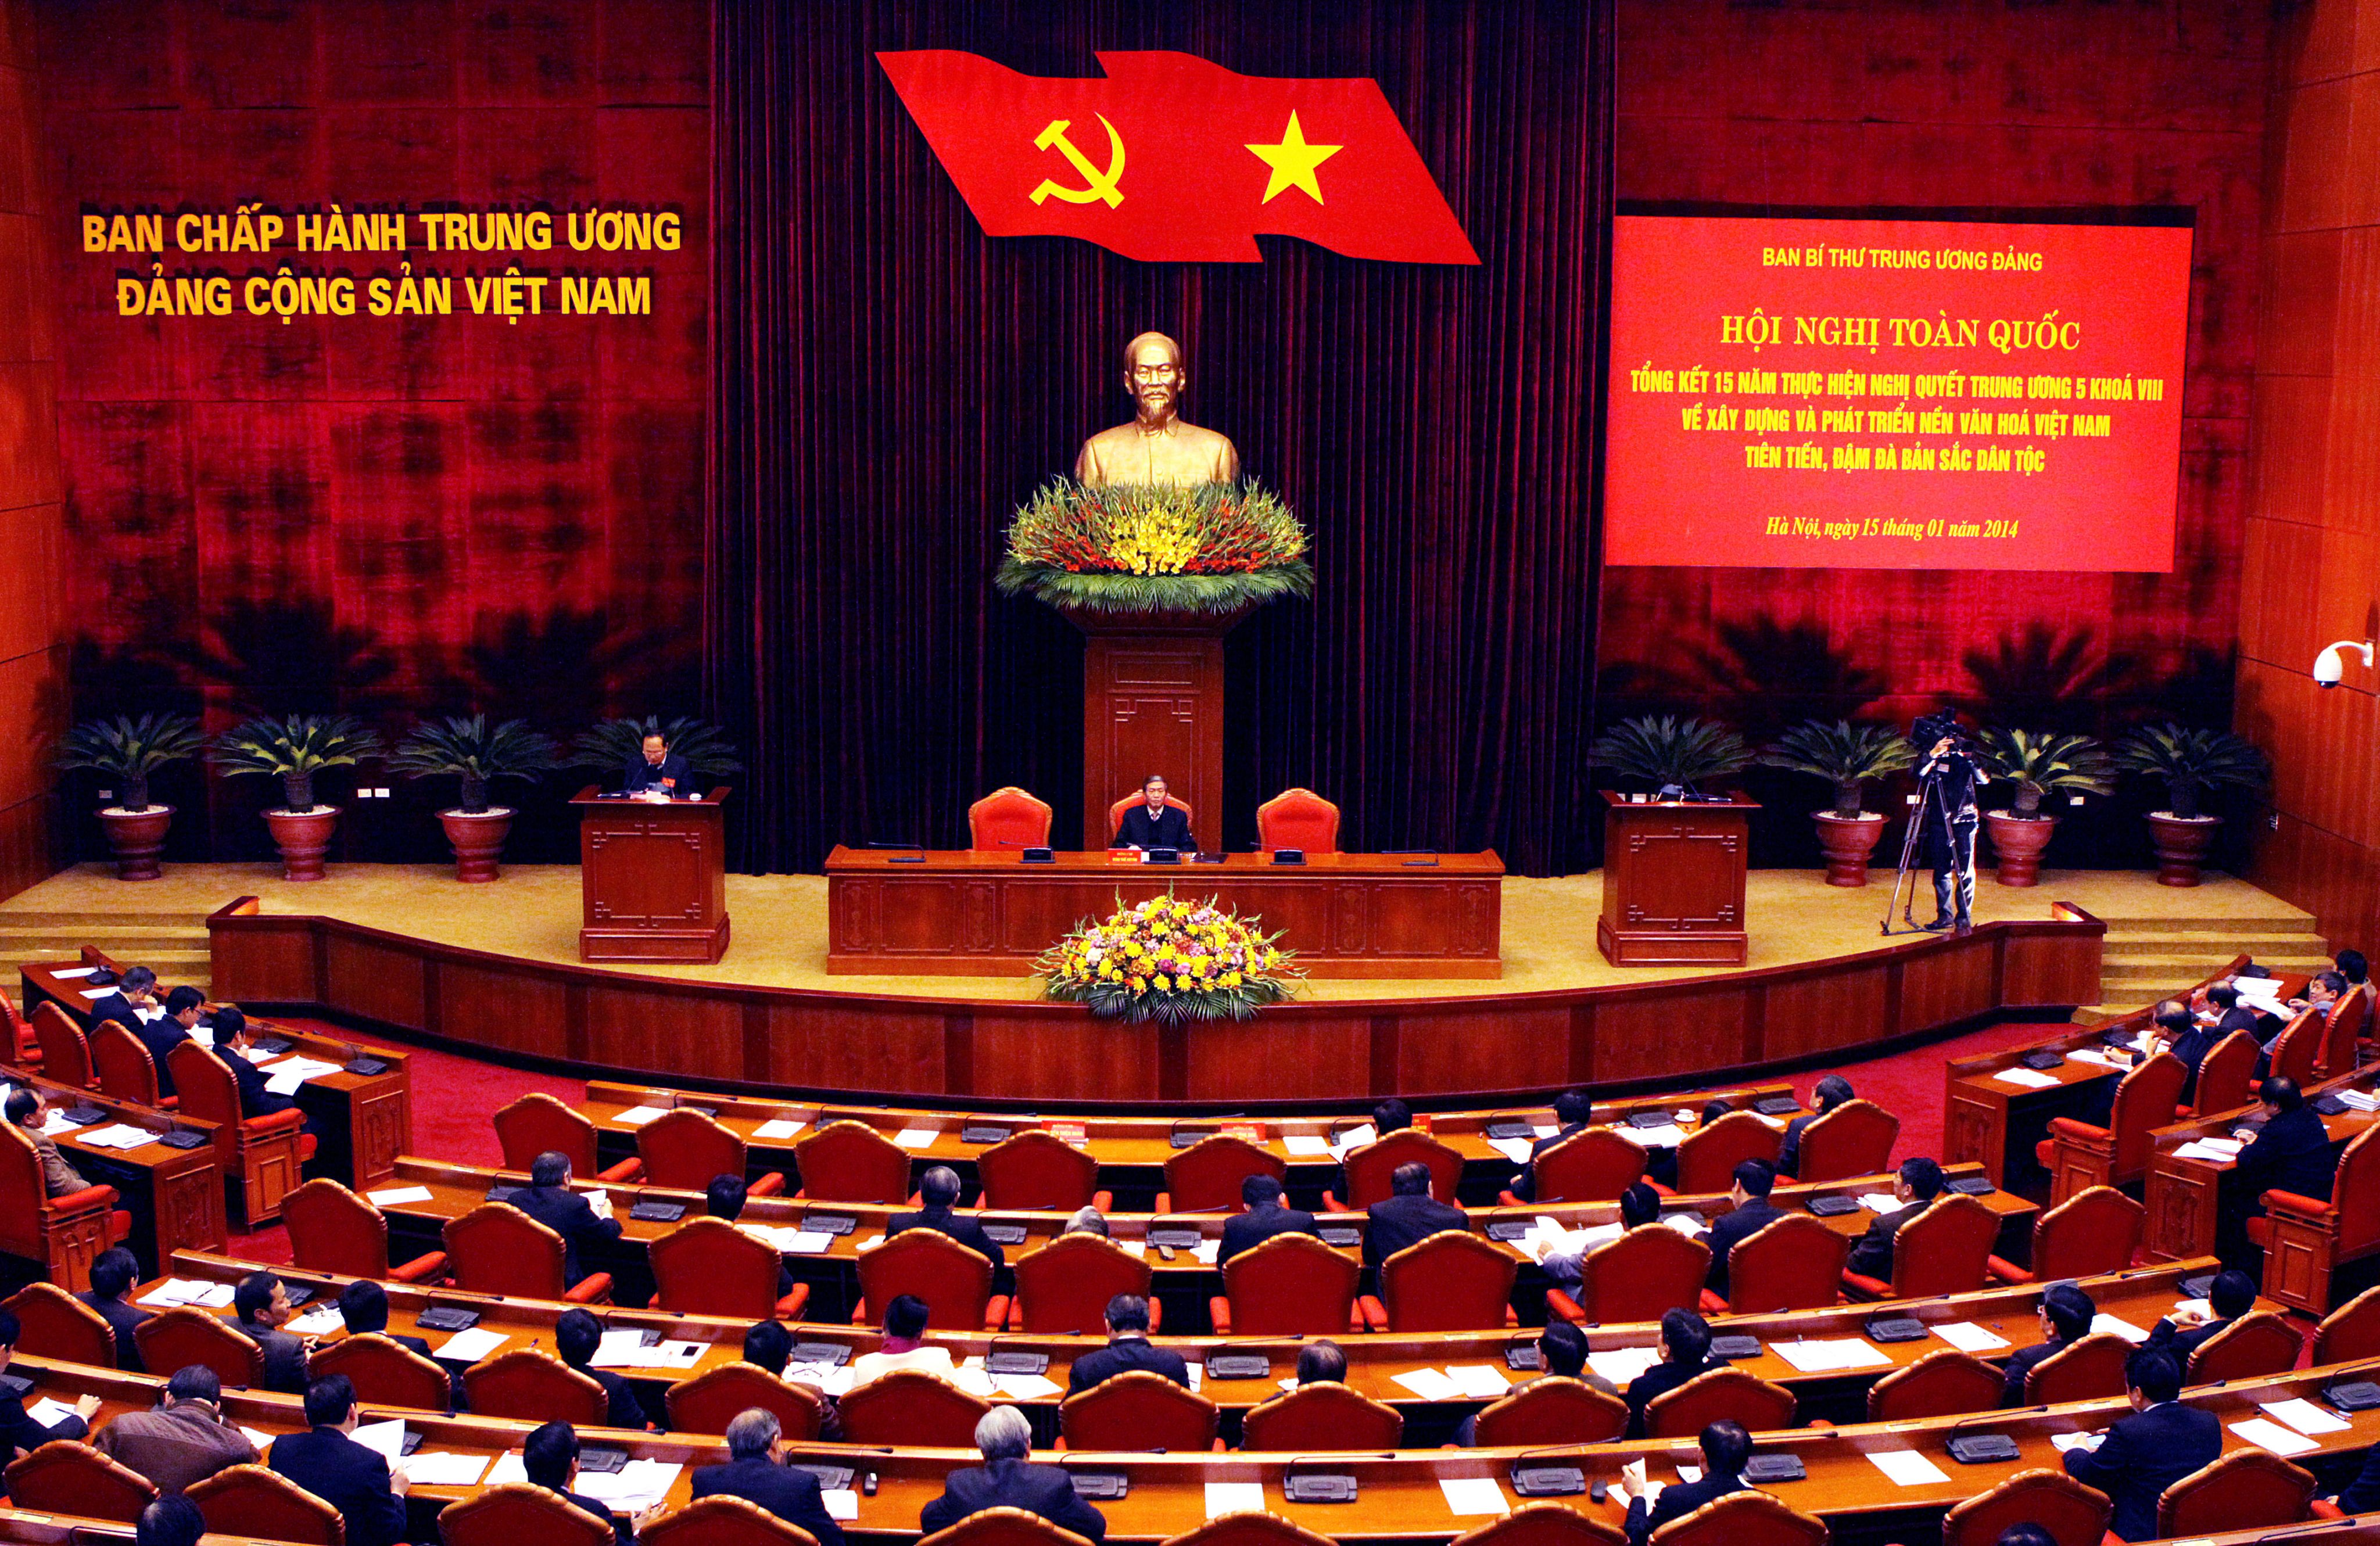 Toàn cảnh Hội nghị toàn quốc tổng kết 15 năm thực hiện Nghị quyết Trung ương 5 khóa VIII về xây dựng và phát triển nền văn hóa Việt Nam tiên tiến, đậm đà bản sắc dân tộc